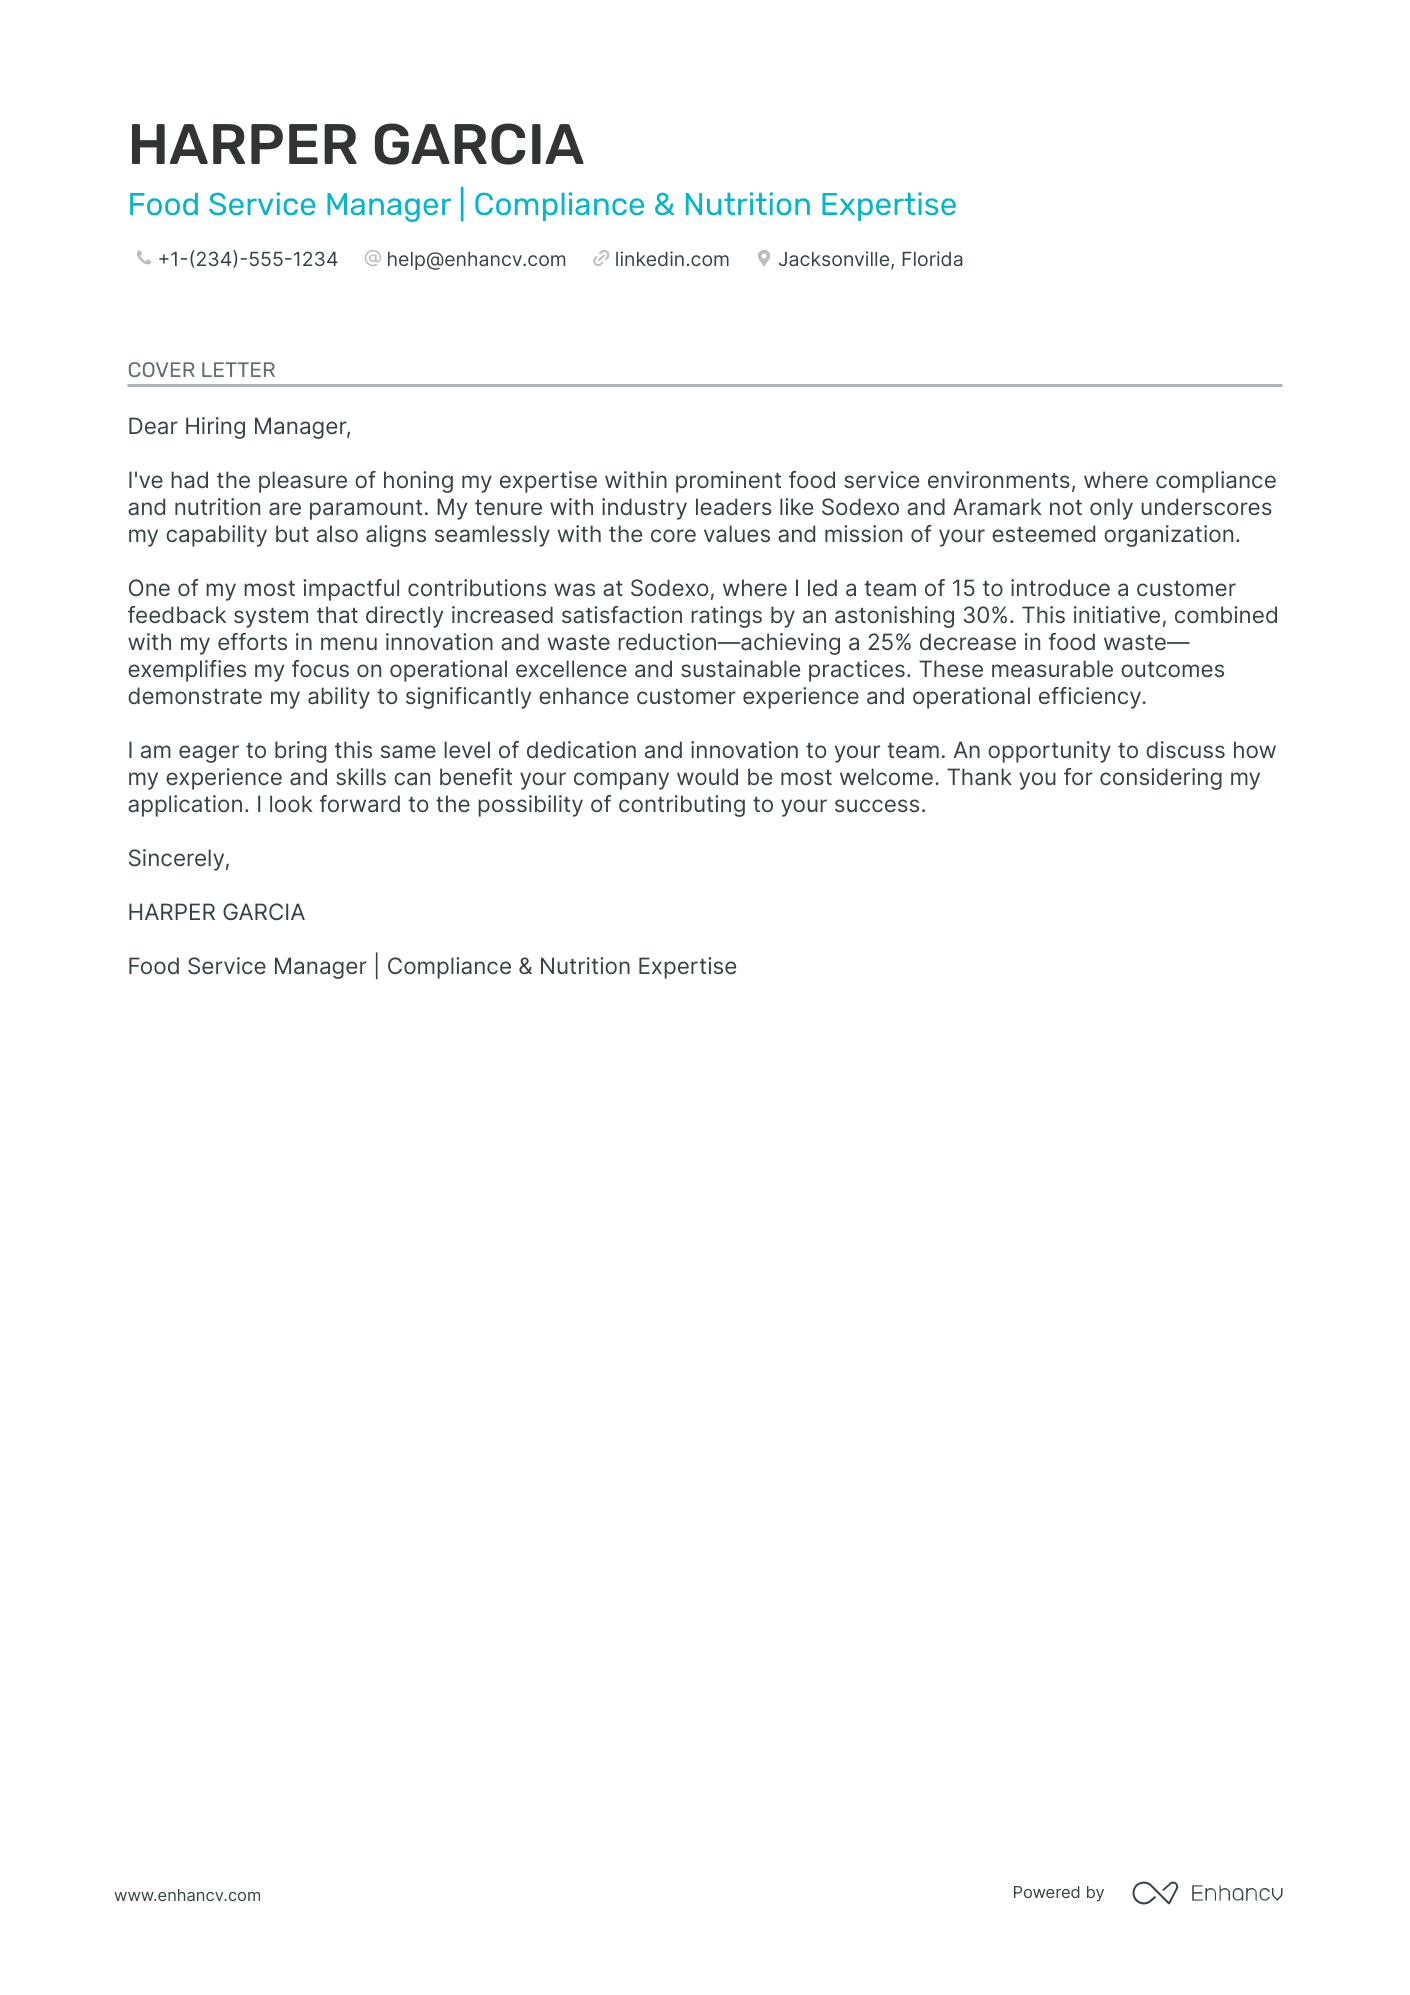 cover letter for manager restaurant